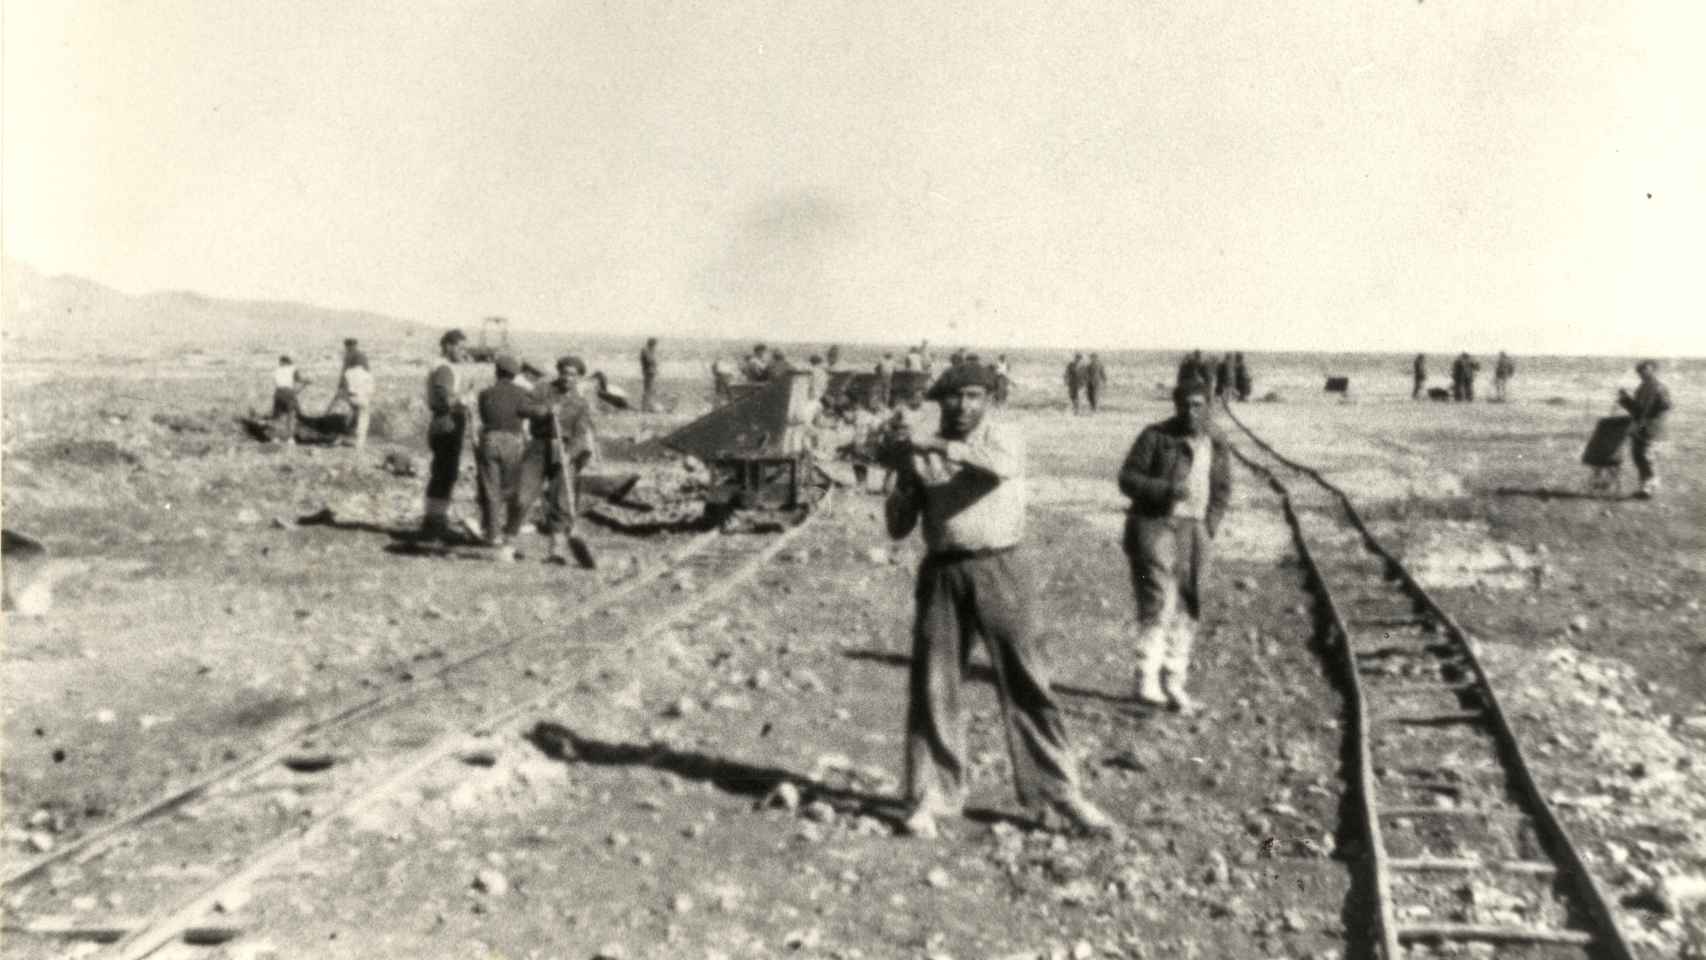 Otra imagen de presos trabajando en la construcción del ferrocarril Transahariano, que debía unir las posesiones subsaharianas de la Francia de Vichy.